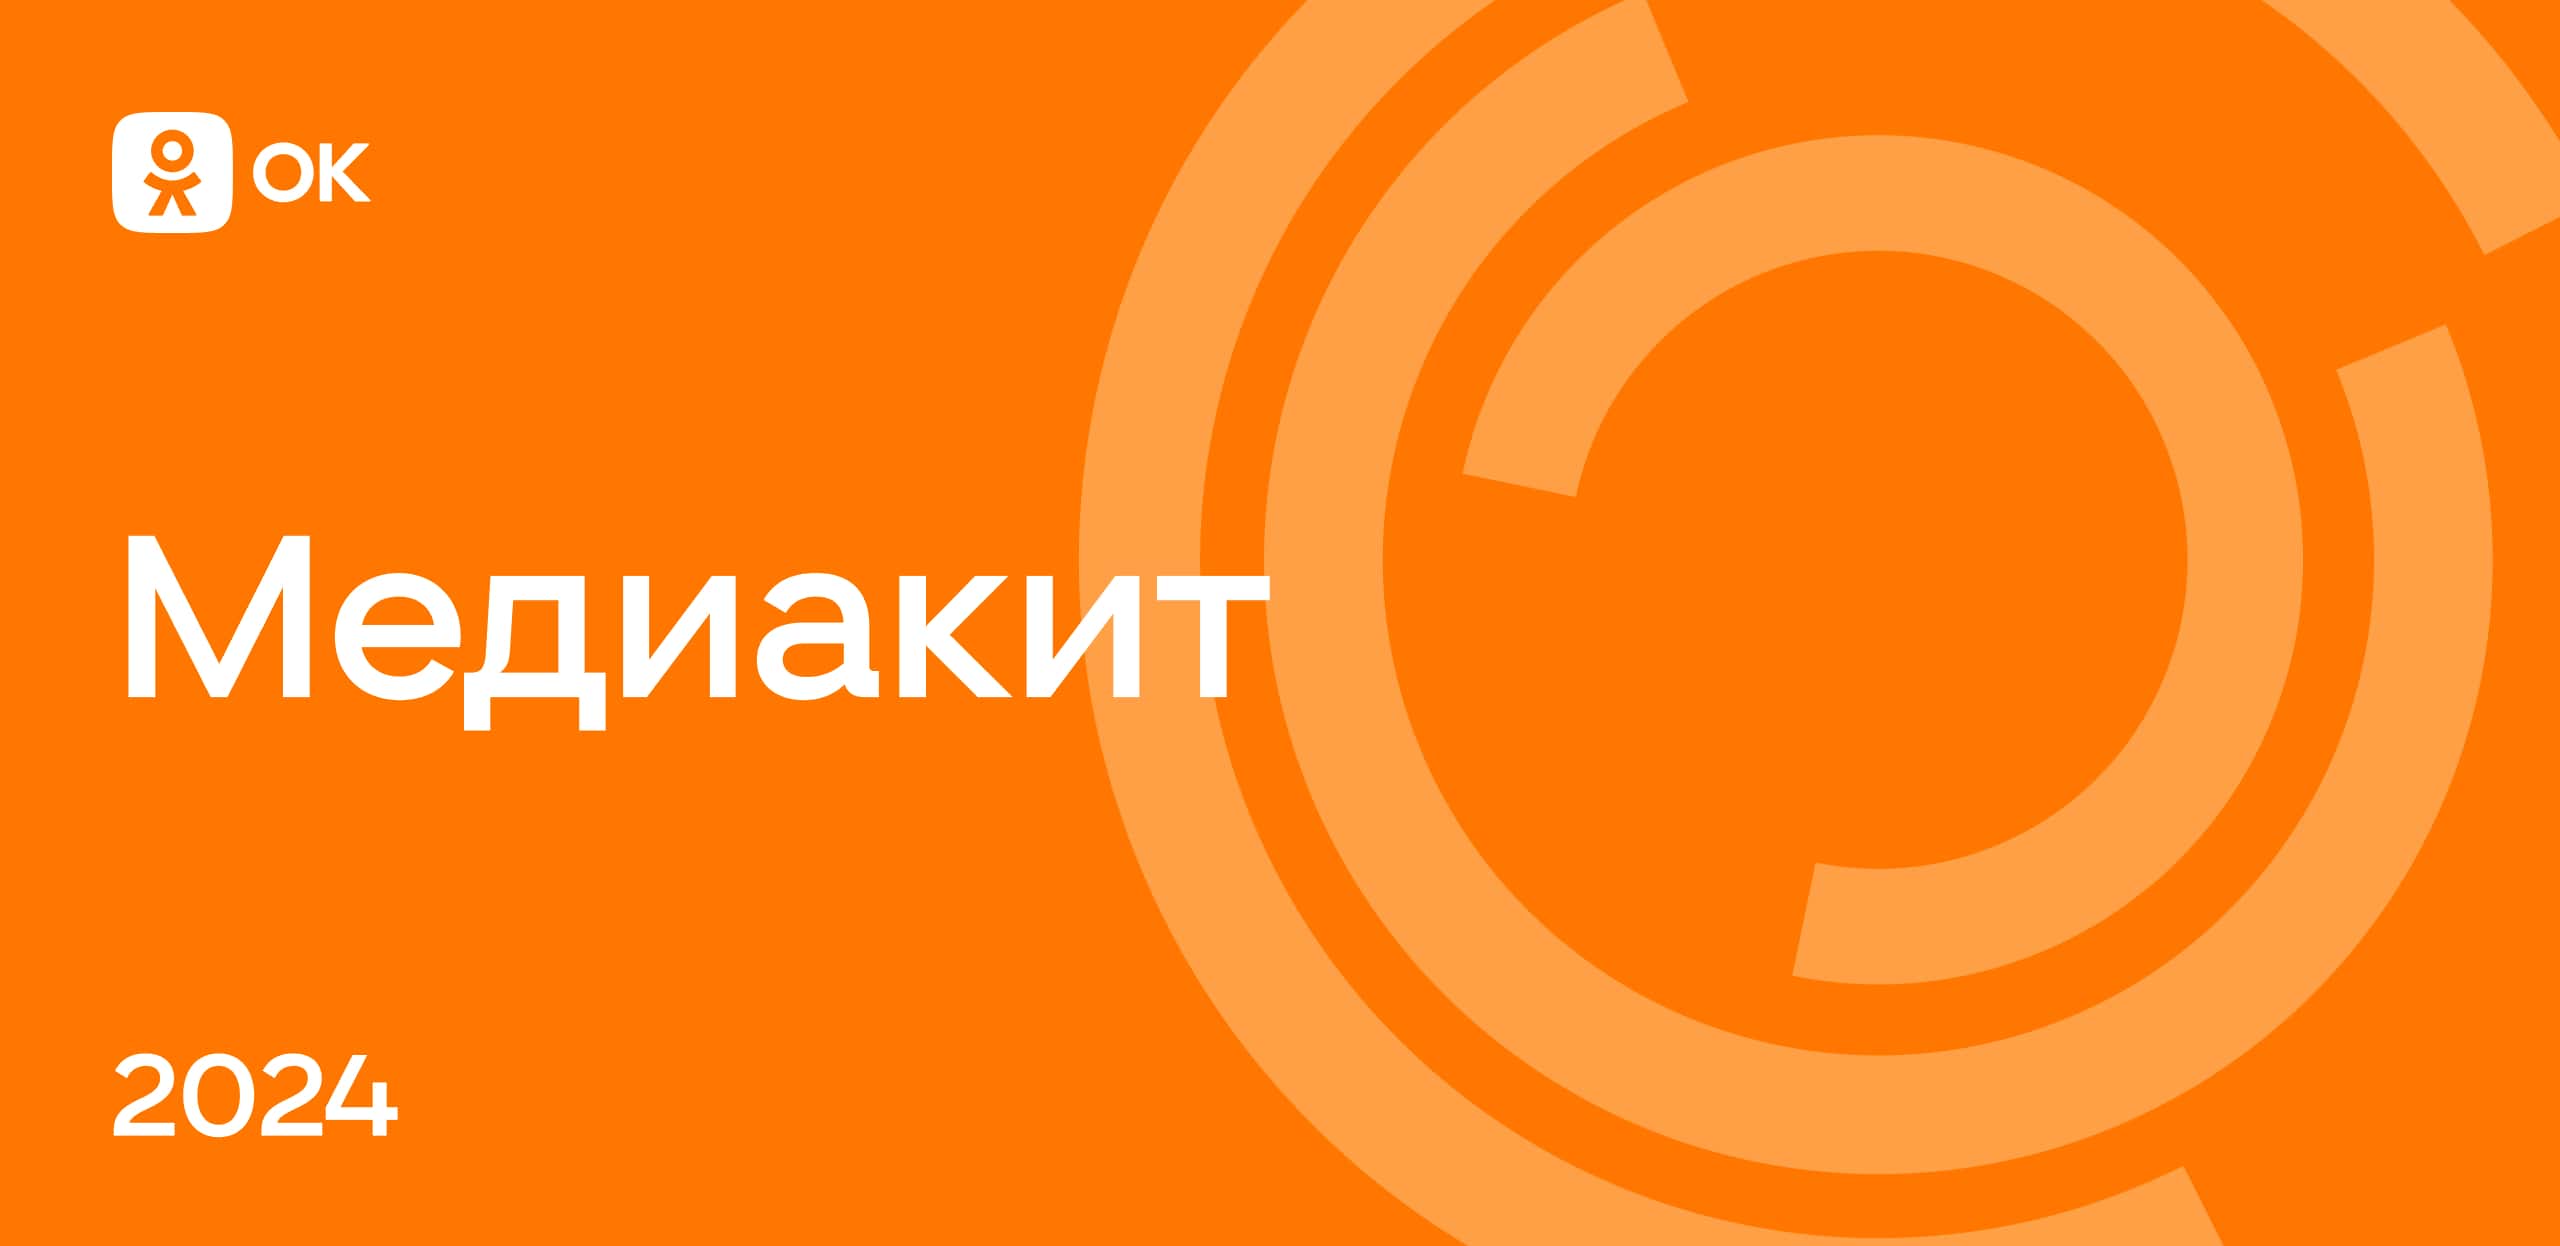 Почему не работает приложение Одноклассники сегодня Март 